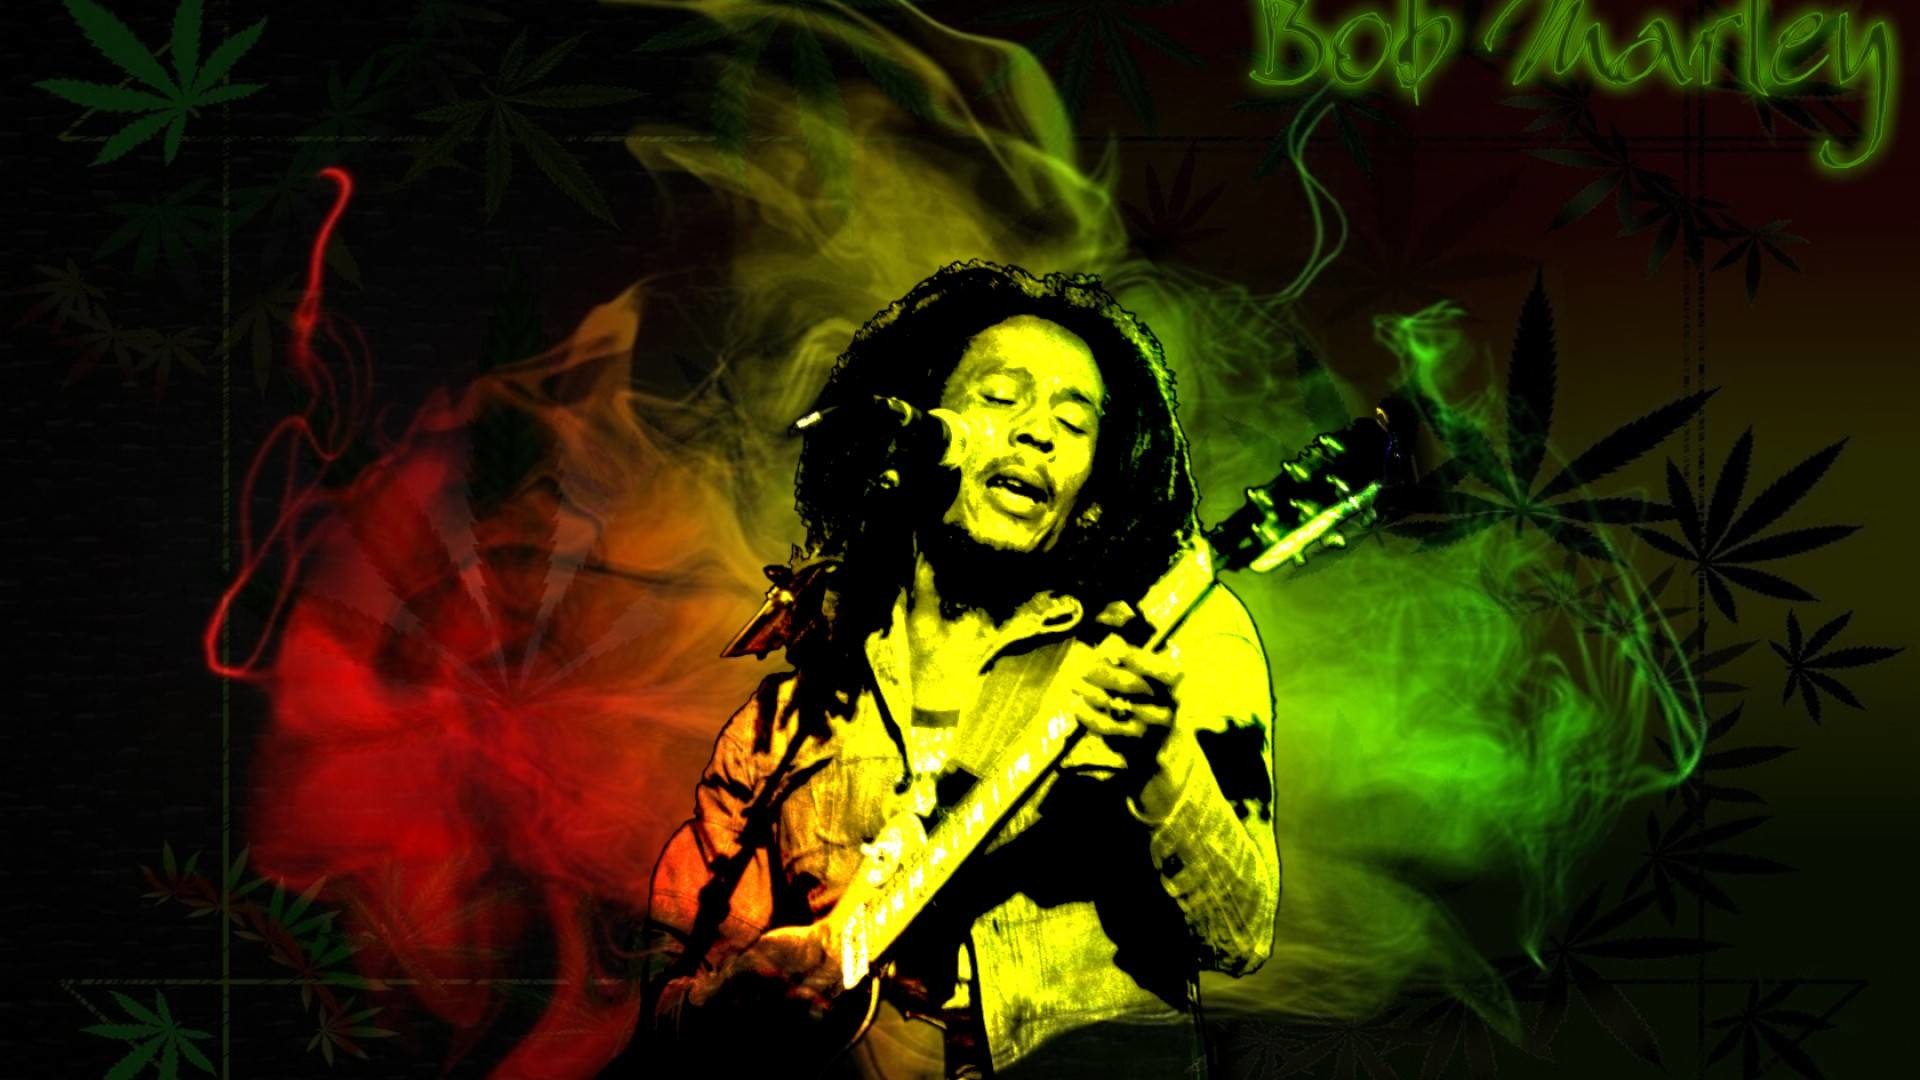 1920x1080 Bob Marley Full HD Wallpaper 